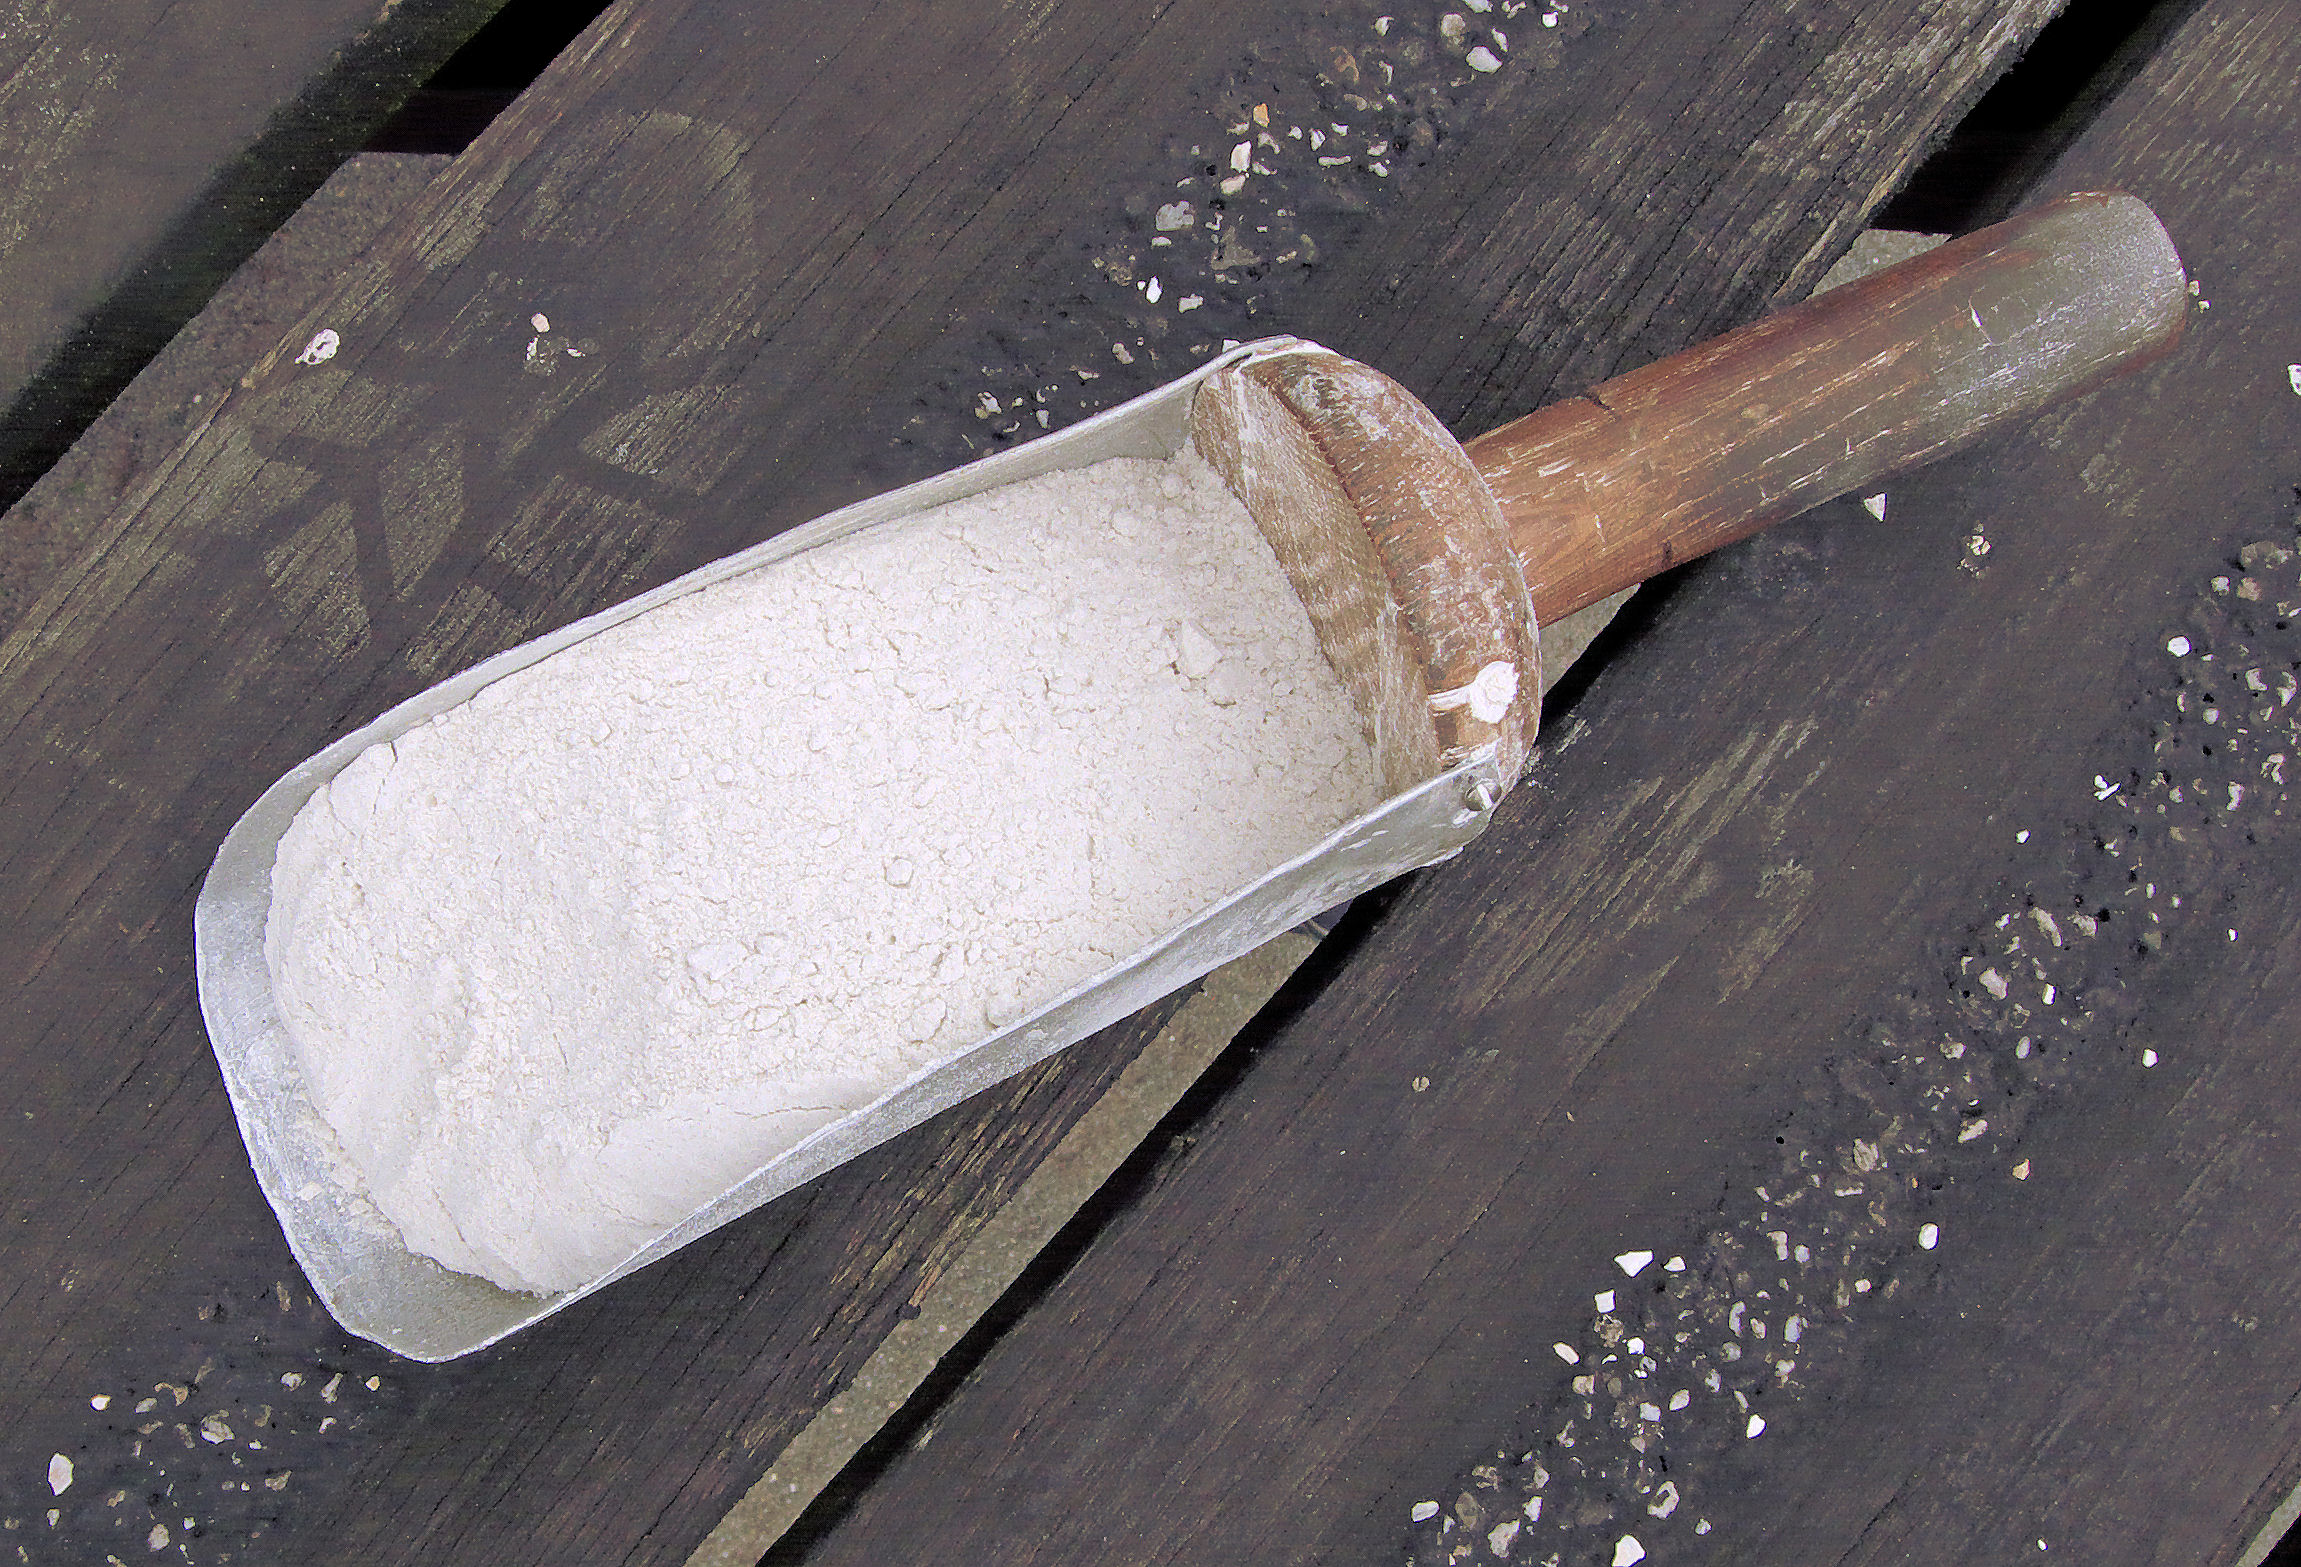 La farine de sarrasin - Quelles sont ses origines et de quelle